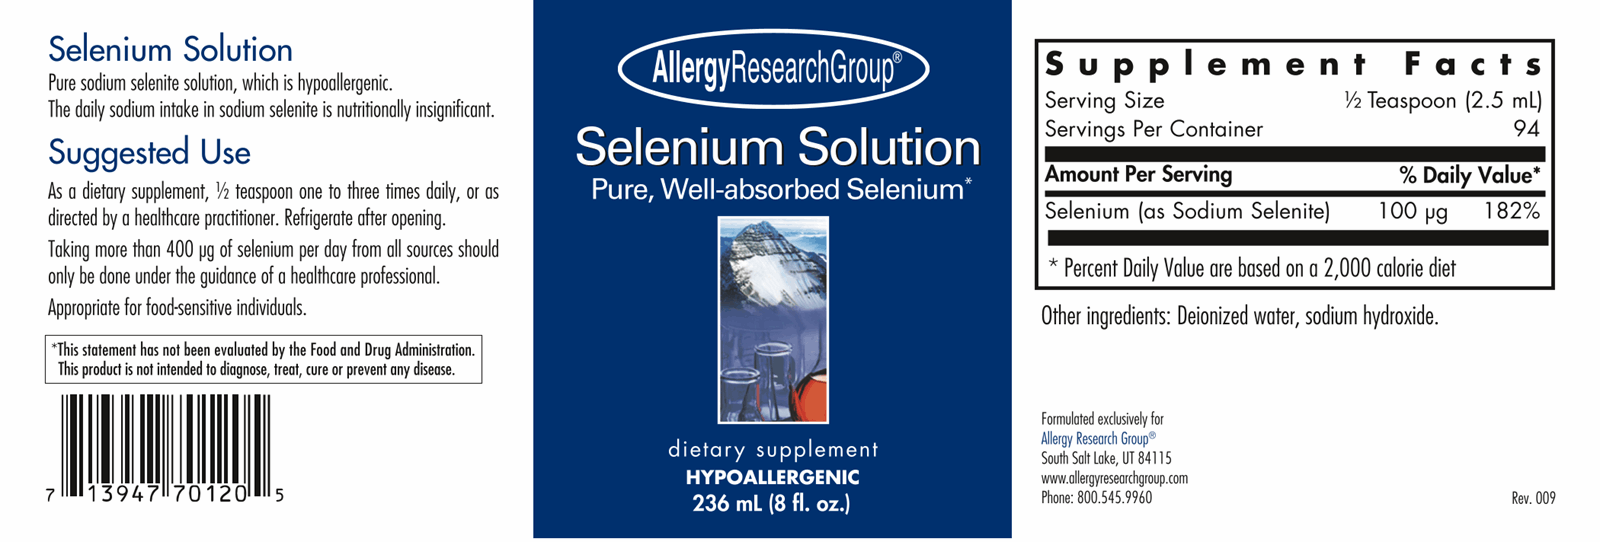 Selenium Solution 